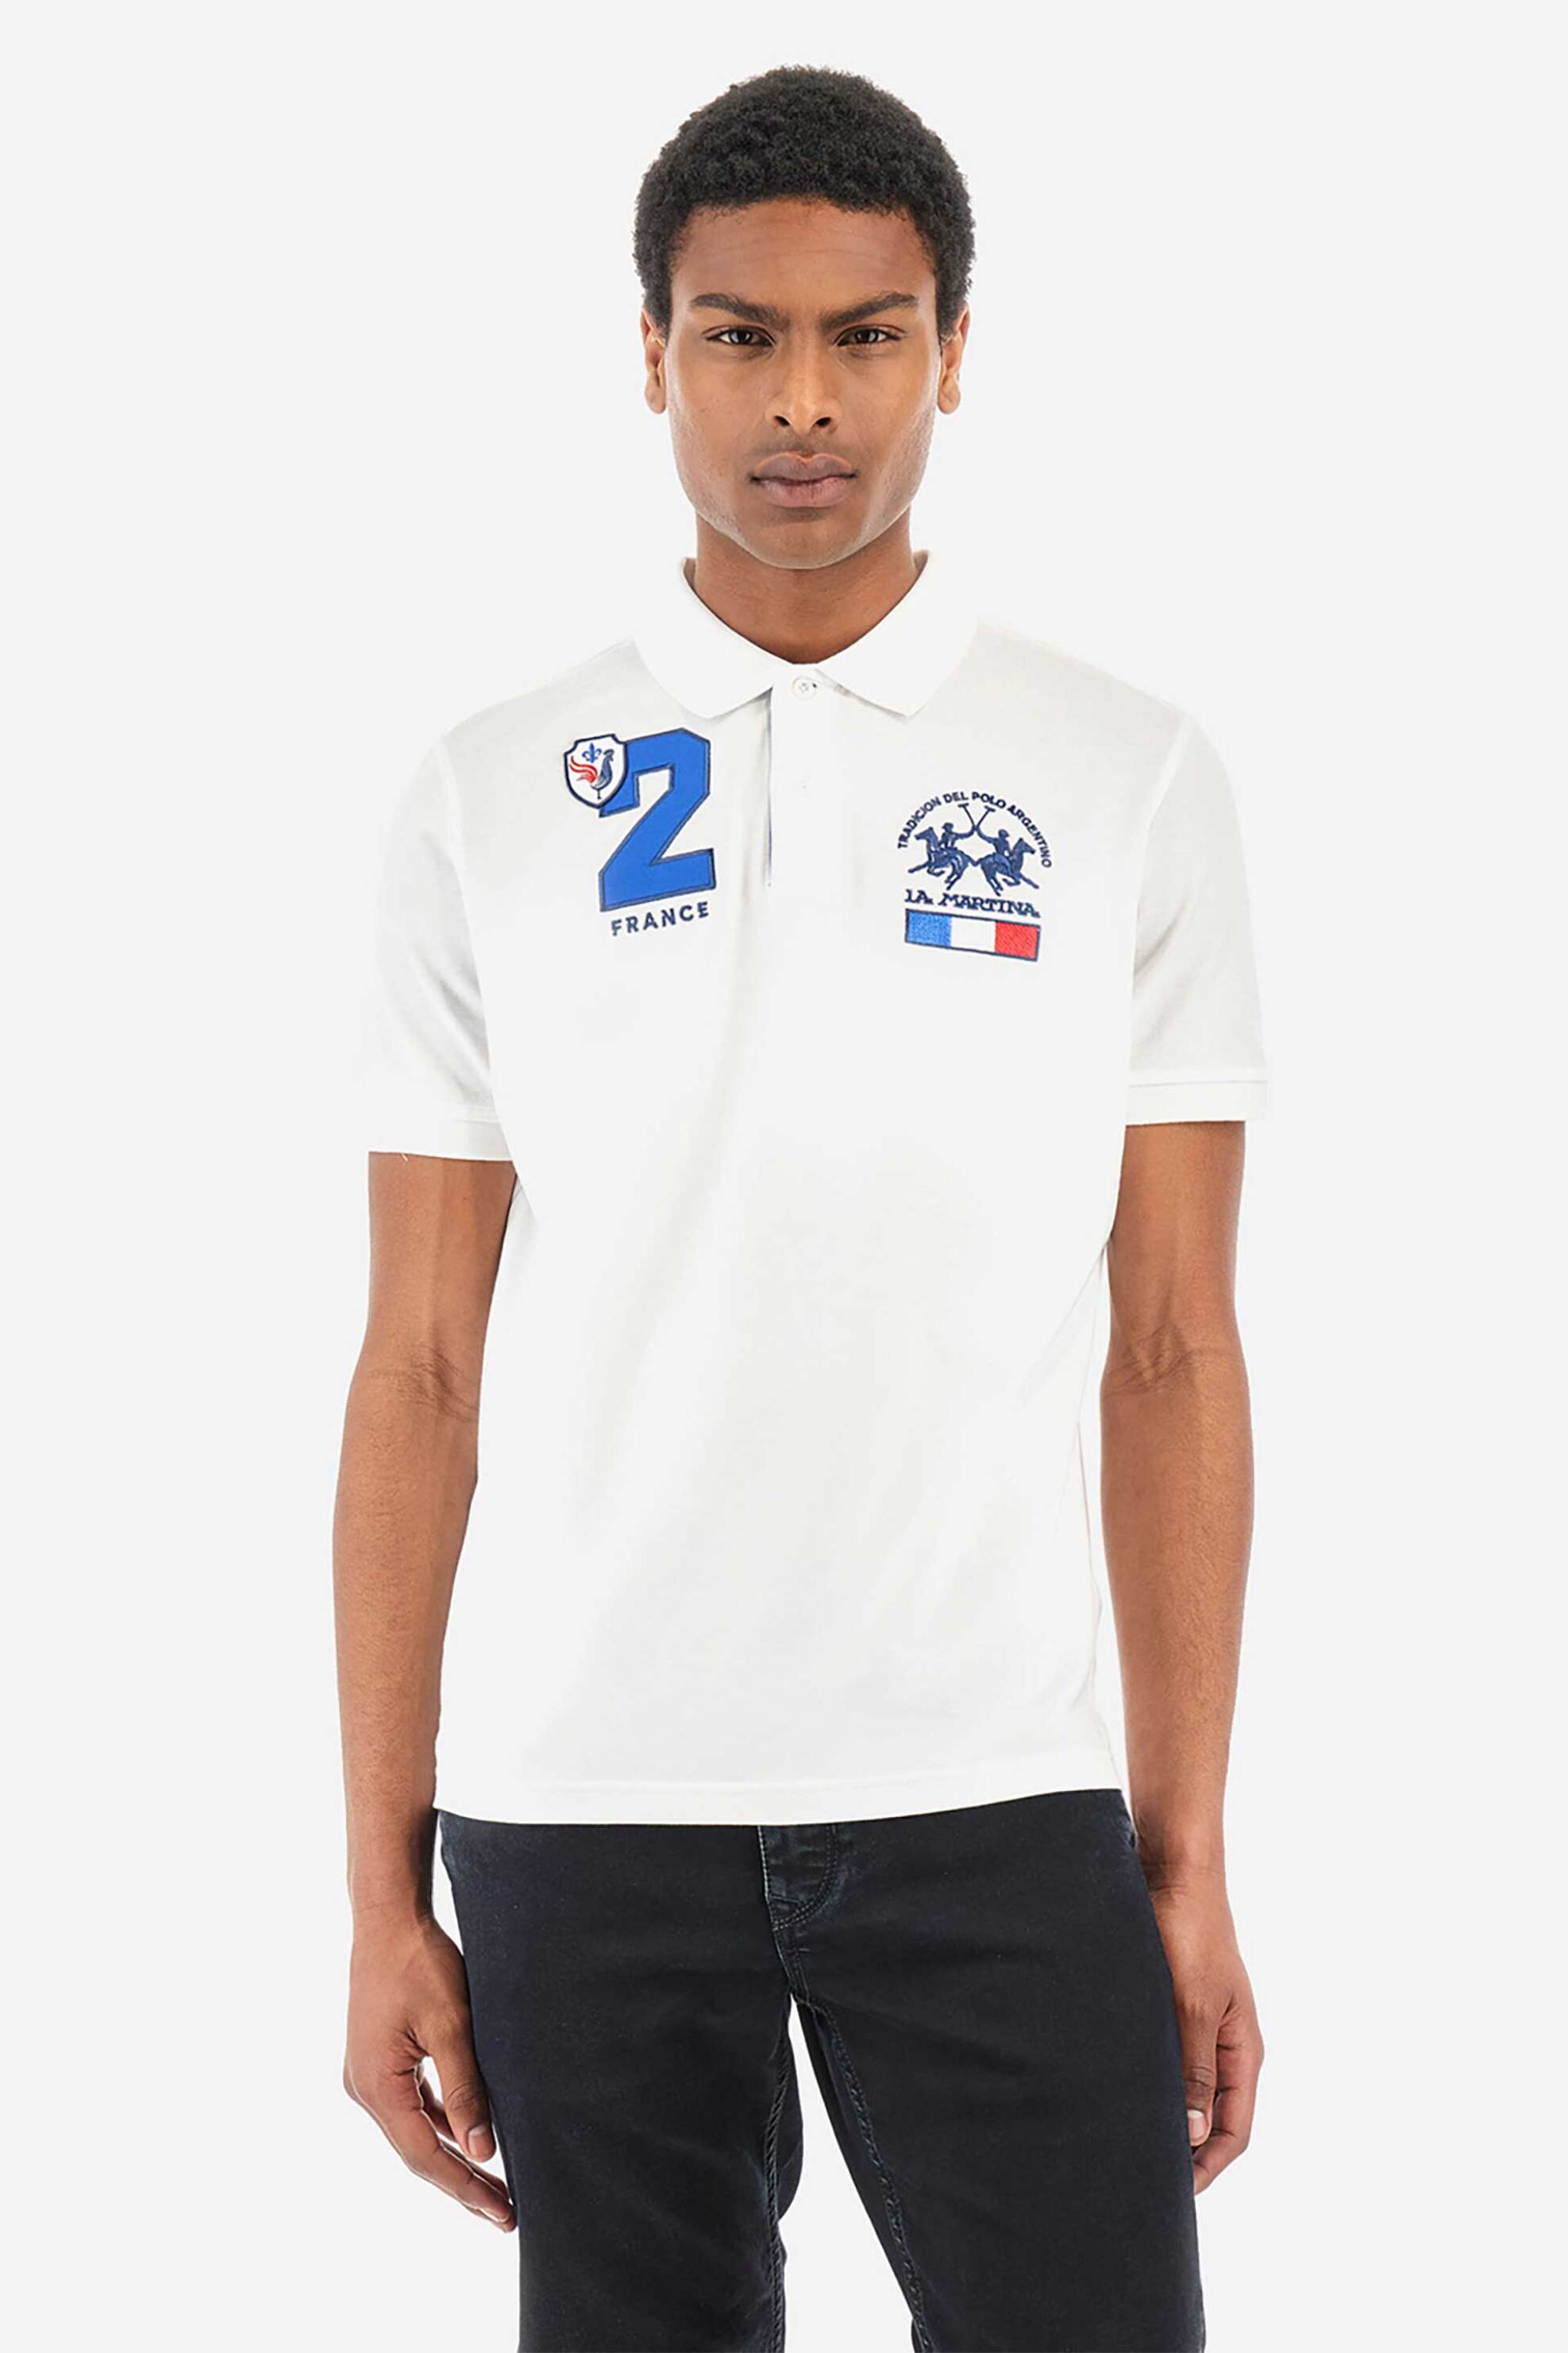 Ανδρική Μόδα > Ανδρικά Ρούχα > Ανδρικές Μπλούζες > Ανδρικές Μπλούζες Πολο La Martina ανδρική μπλούζα πόλο μονόχρωμη με contrast λεπτομέρειες "Yisroel" - YMP315-PK031 Λευκό